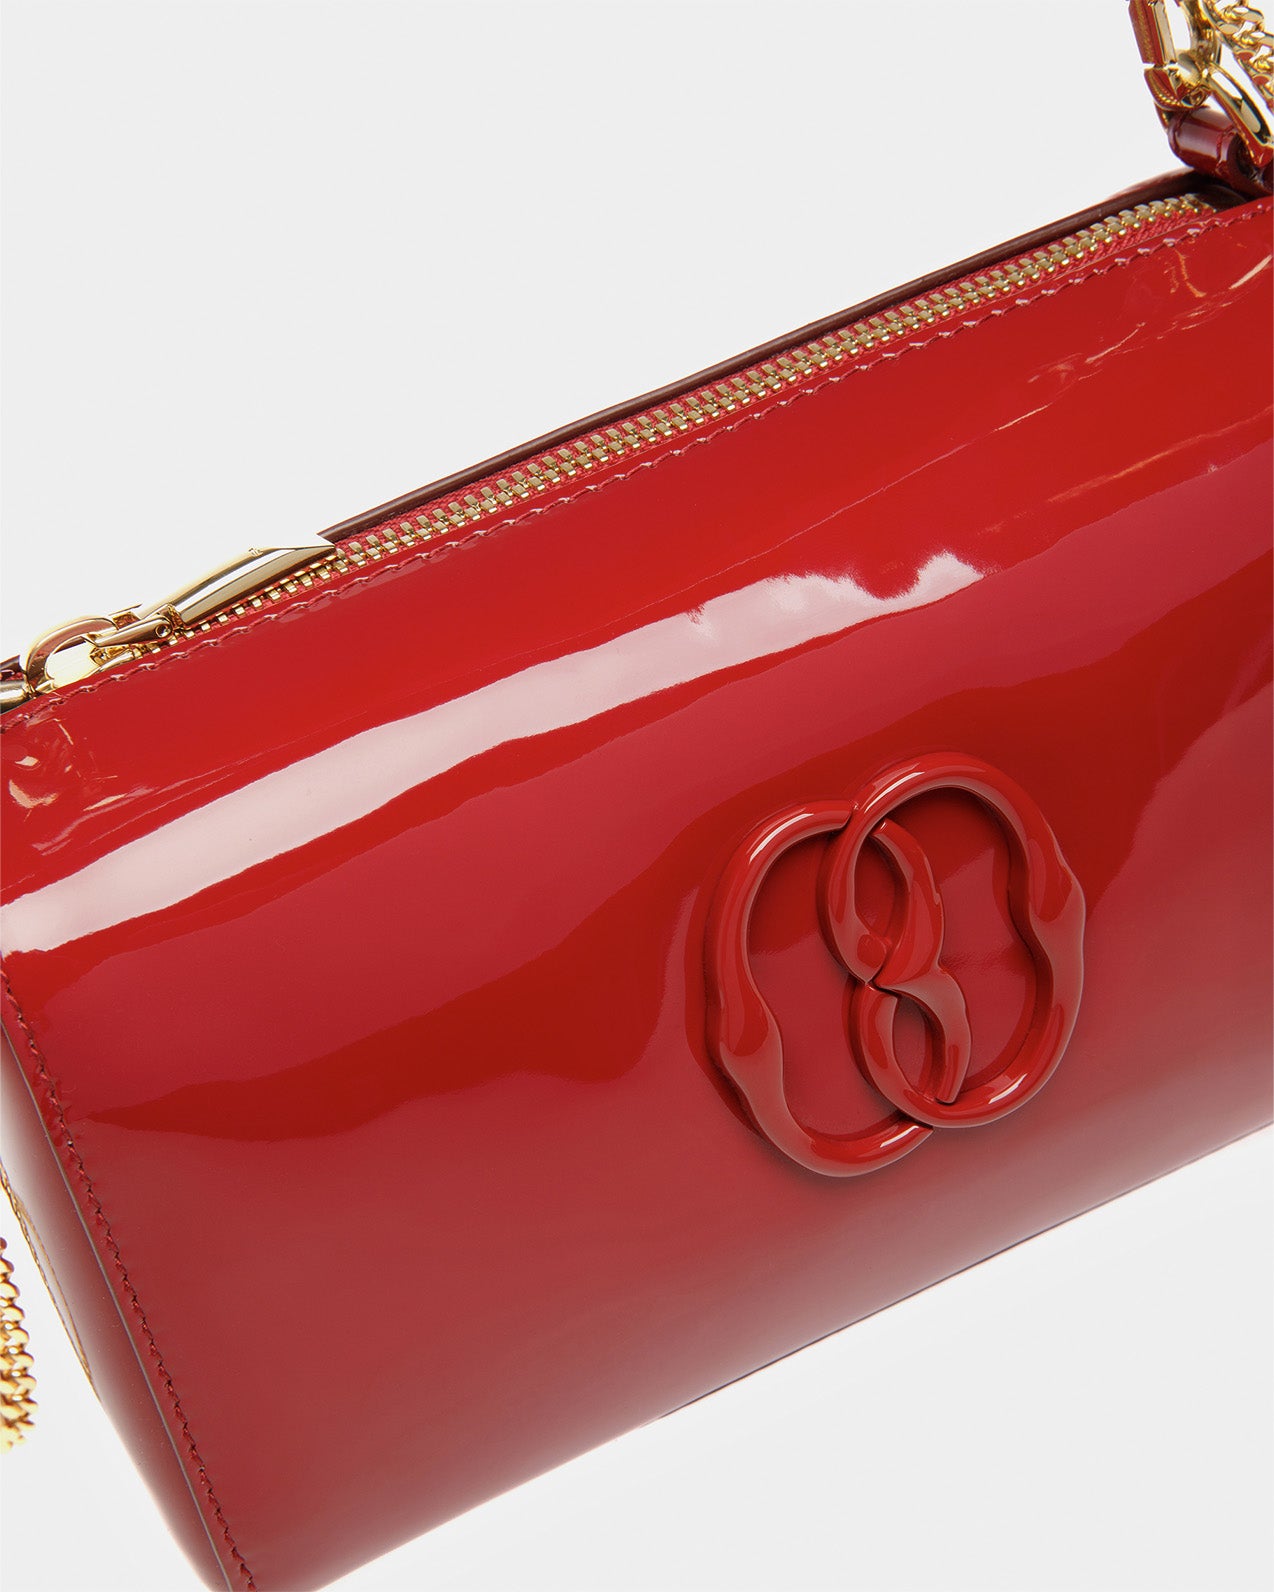 Emblem Rox Mini Bag Ruby Red